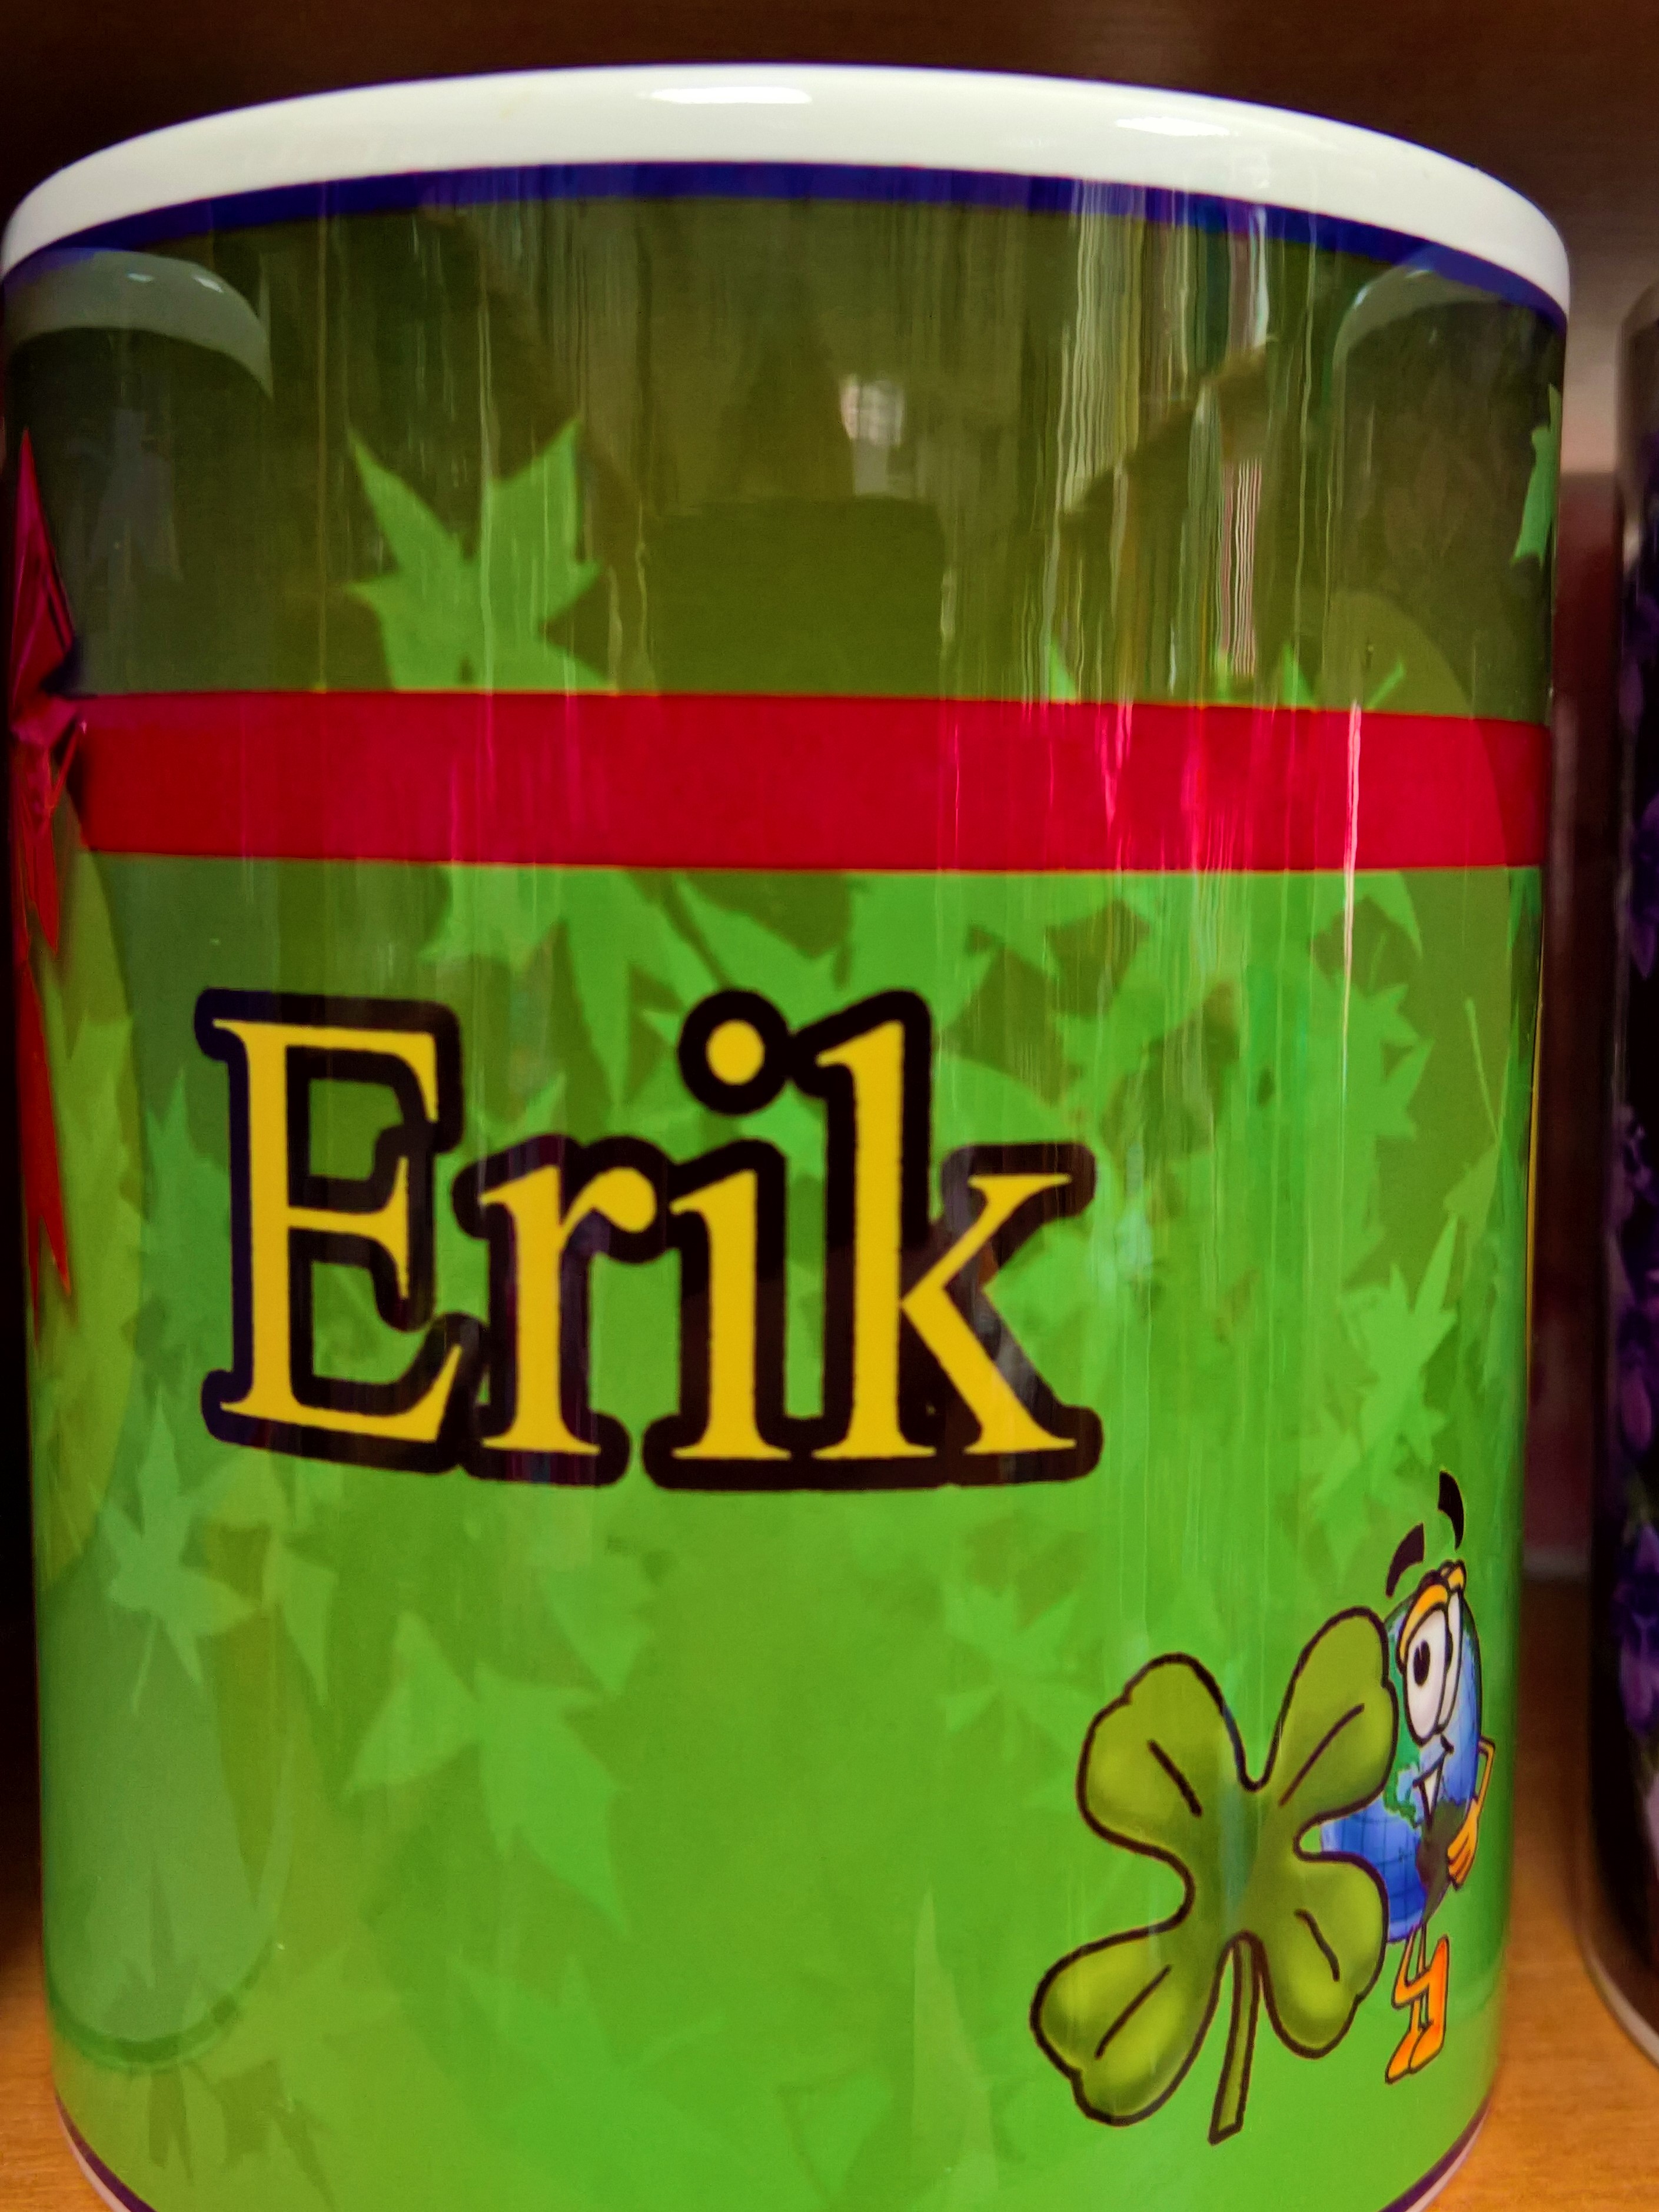 Hrnček "Erik"